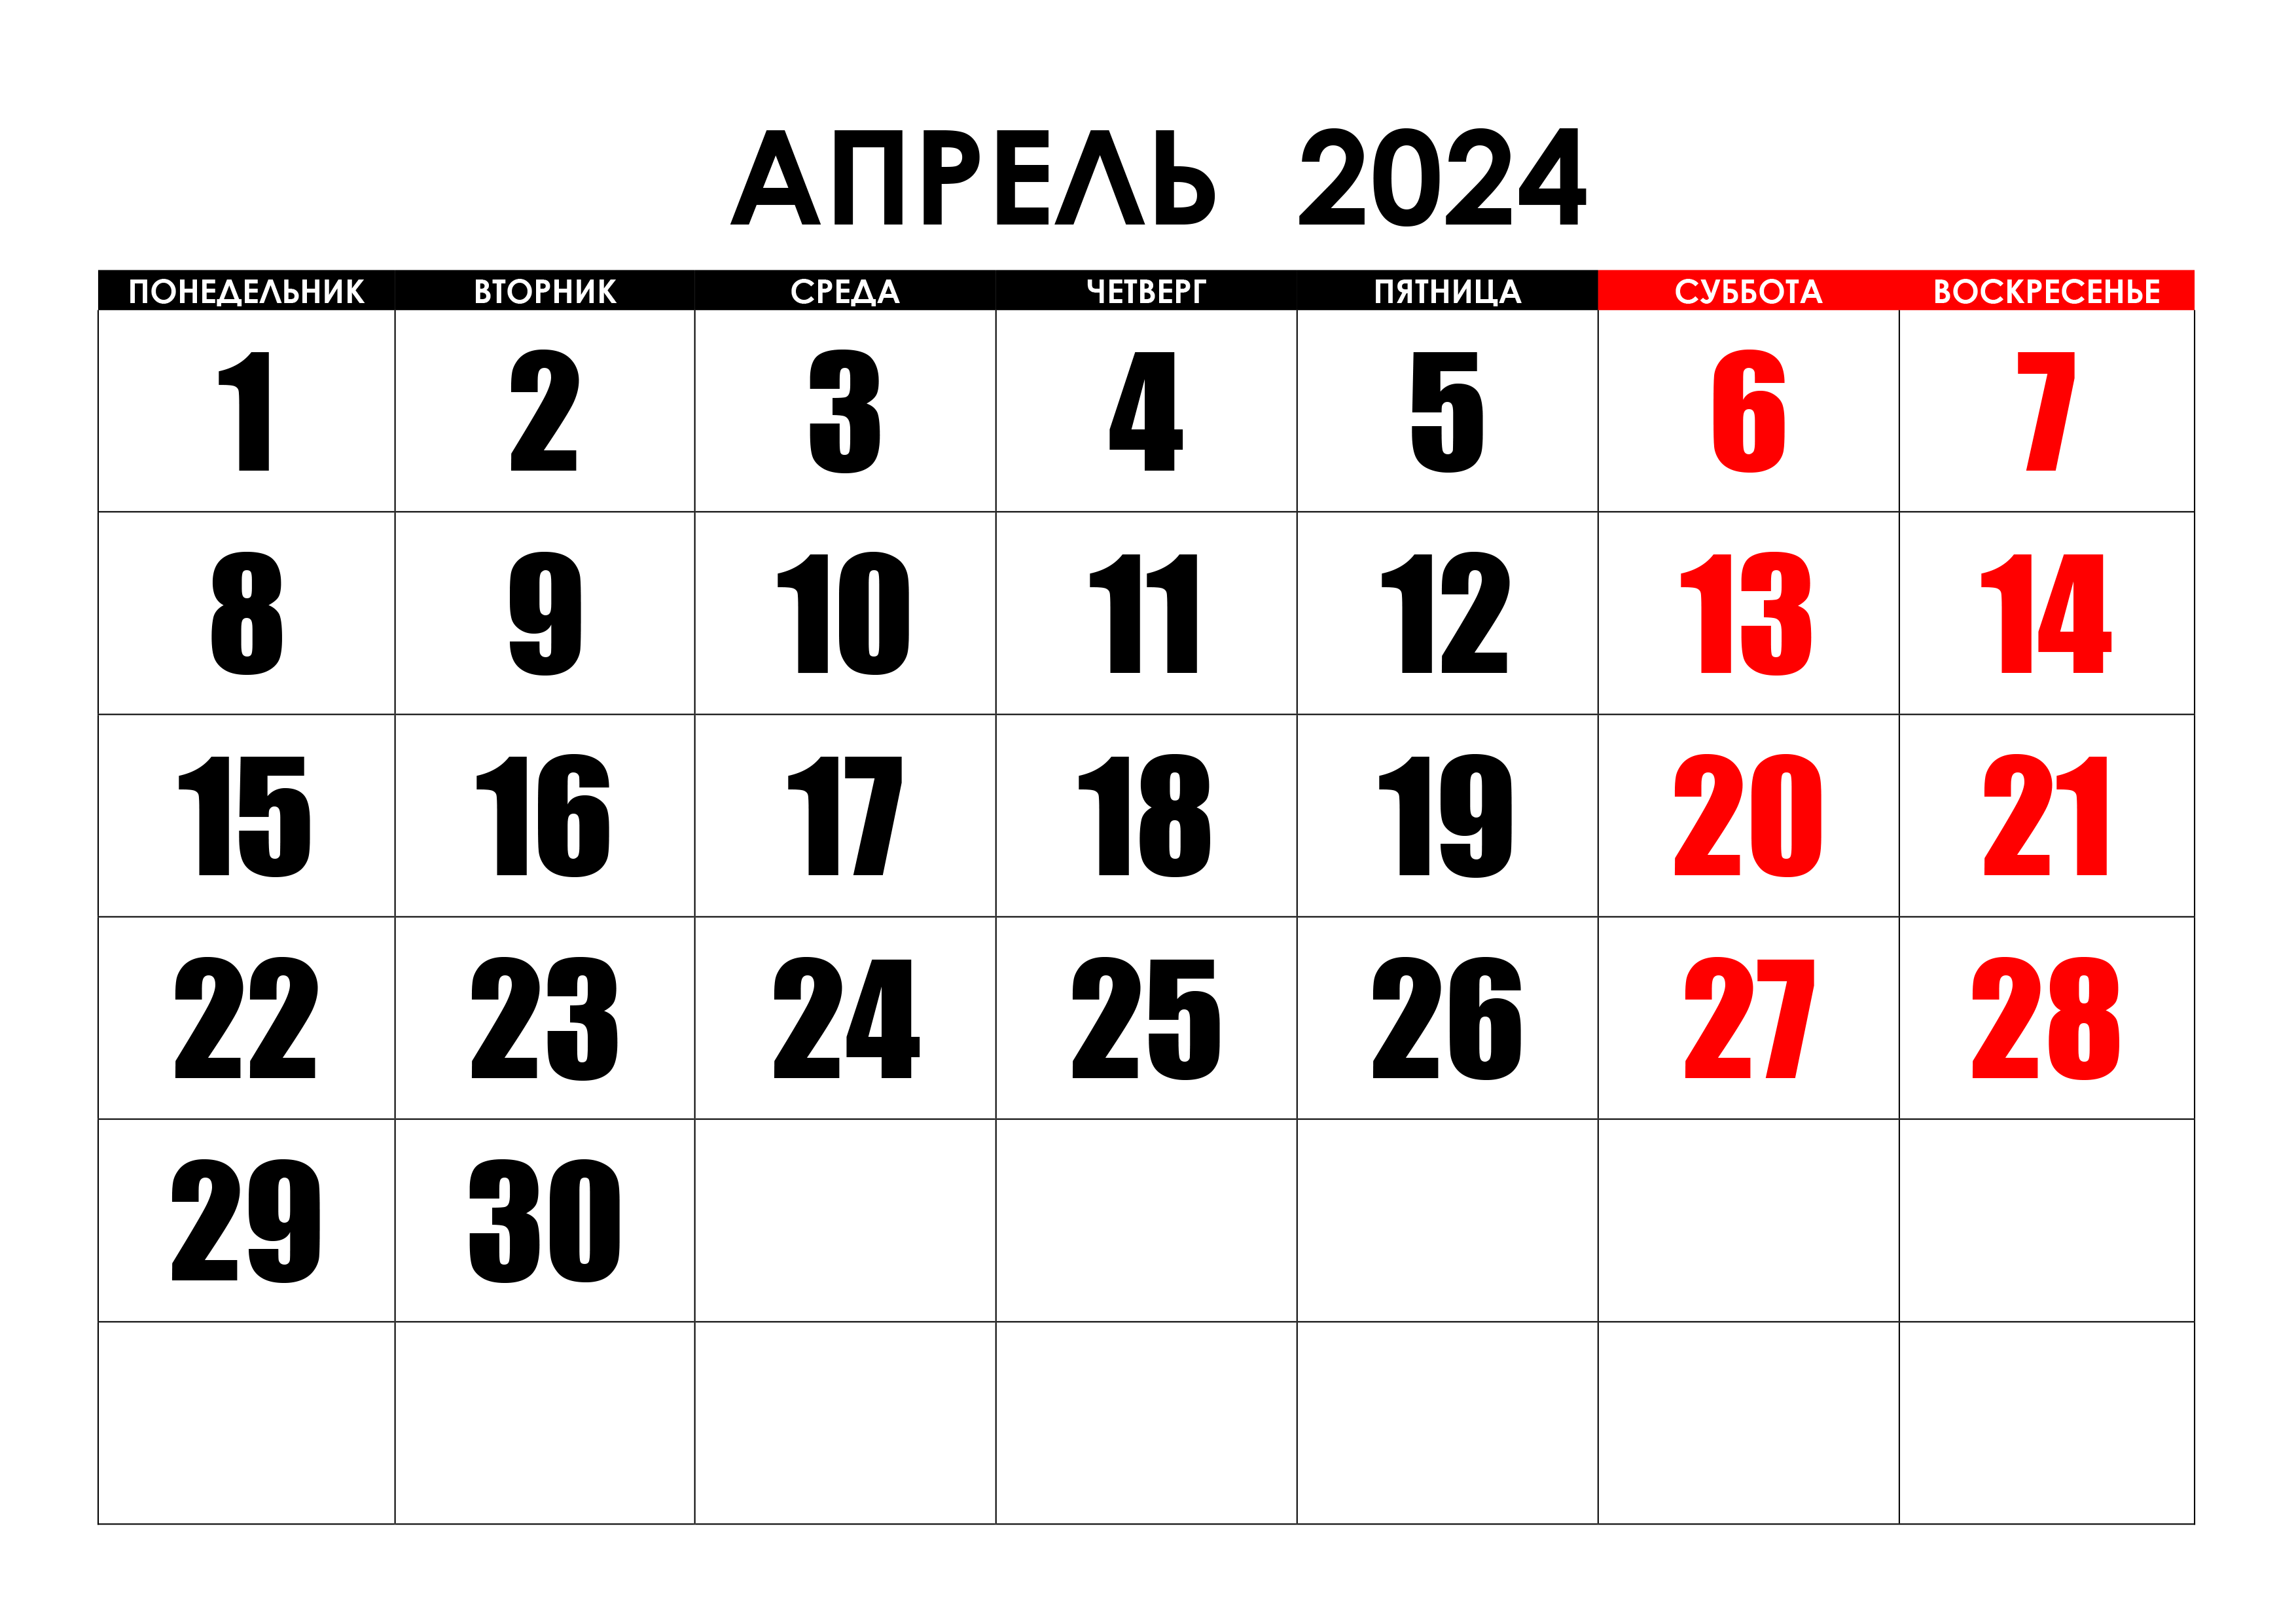 Праздники в мае 2024 г. Календарь август 2022. Календарь на май 2022 года. Календарь на август 2022г. Календарь на пвгуст 2022года.